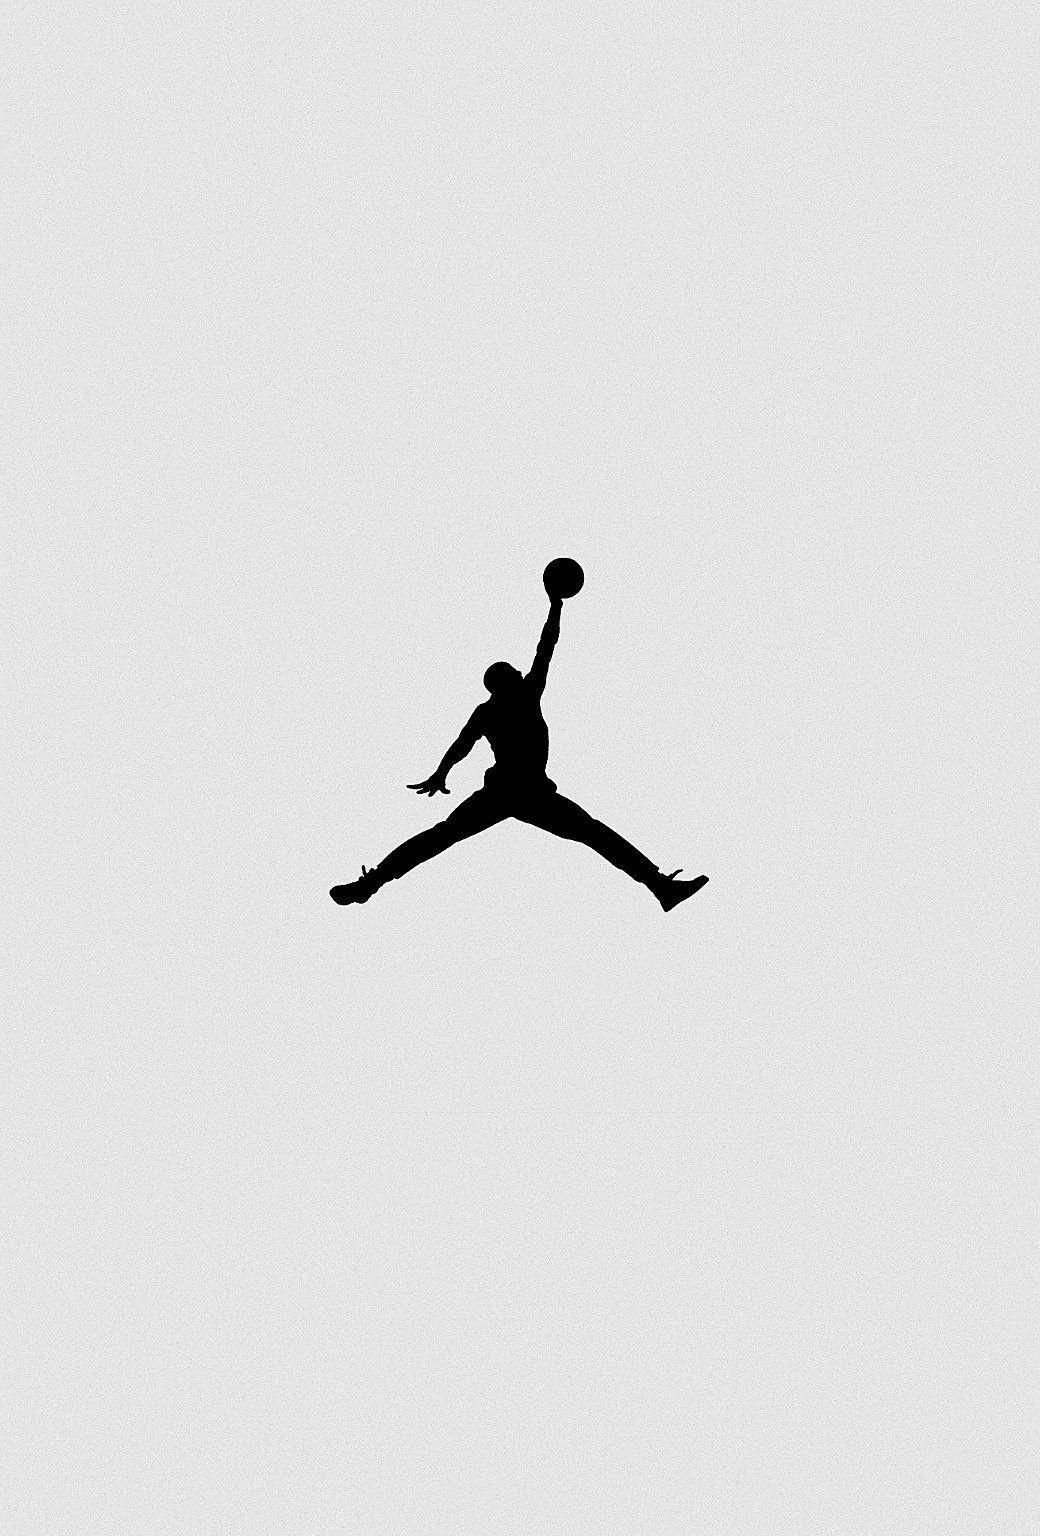 Air Jordan Wallpaper For iPhone. Logo Wallpaper. Fondos de nike, Fondos de pantalla nike, Fondo de pantalla camo